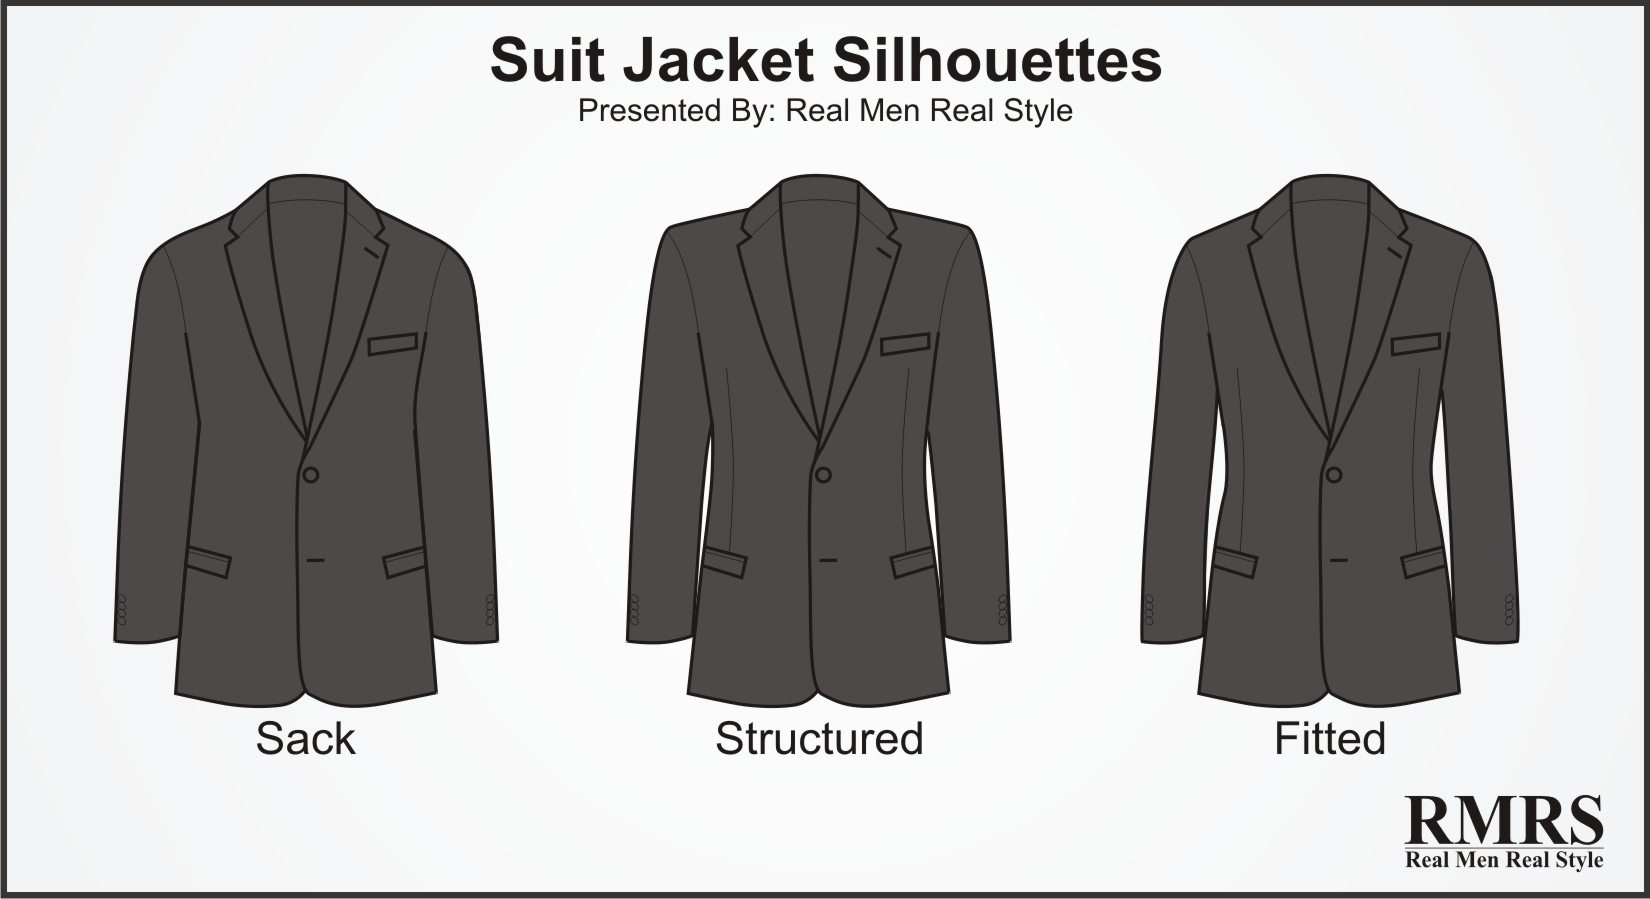 10 Suit Jacket Style Details Men Should Know | Suit Jackets